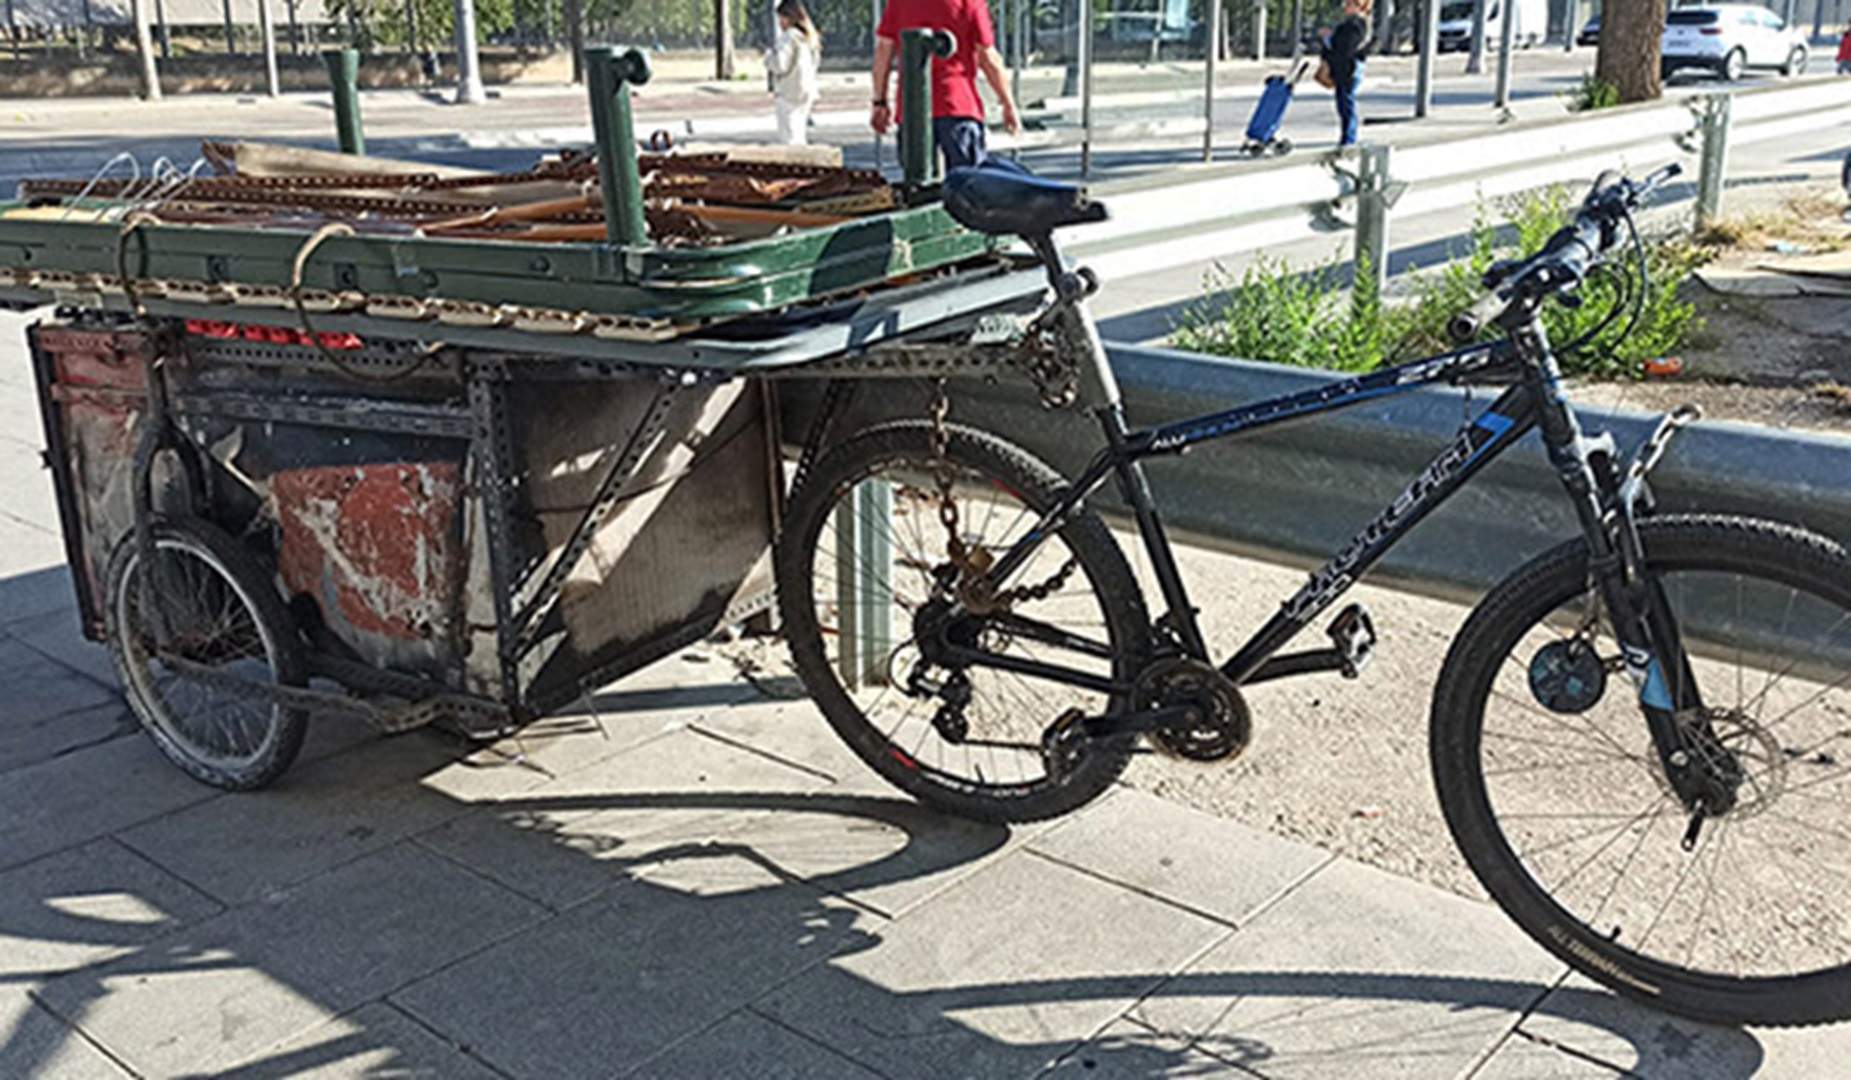 Recoger hierro viejo por las calles de Barcelona: lo hacen unas 3.200 personas y ganan unos 500 euros al mes